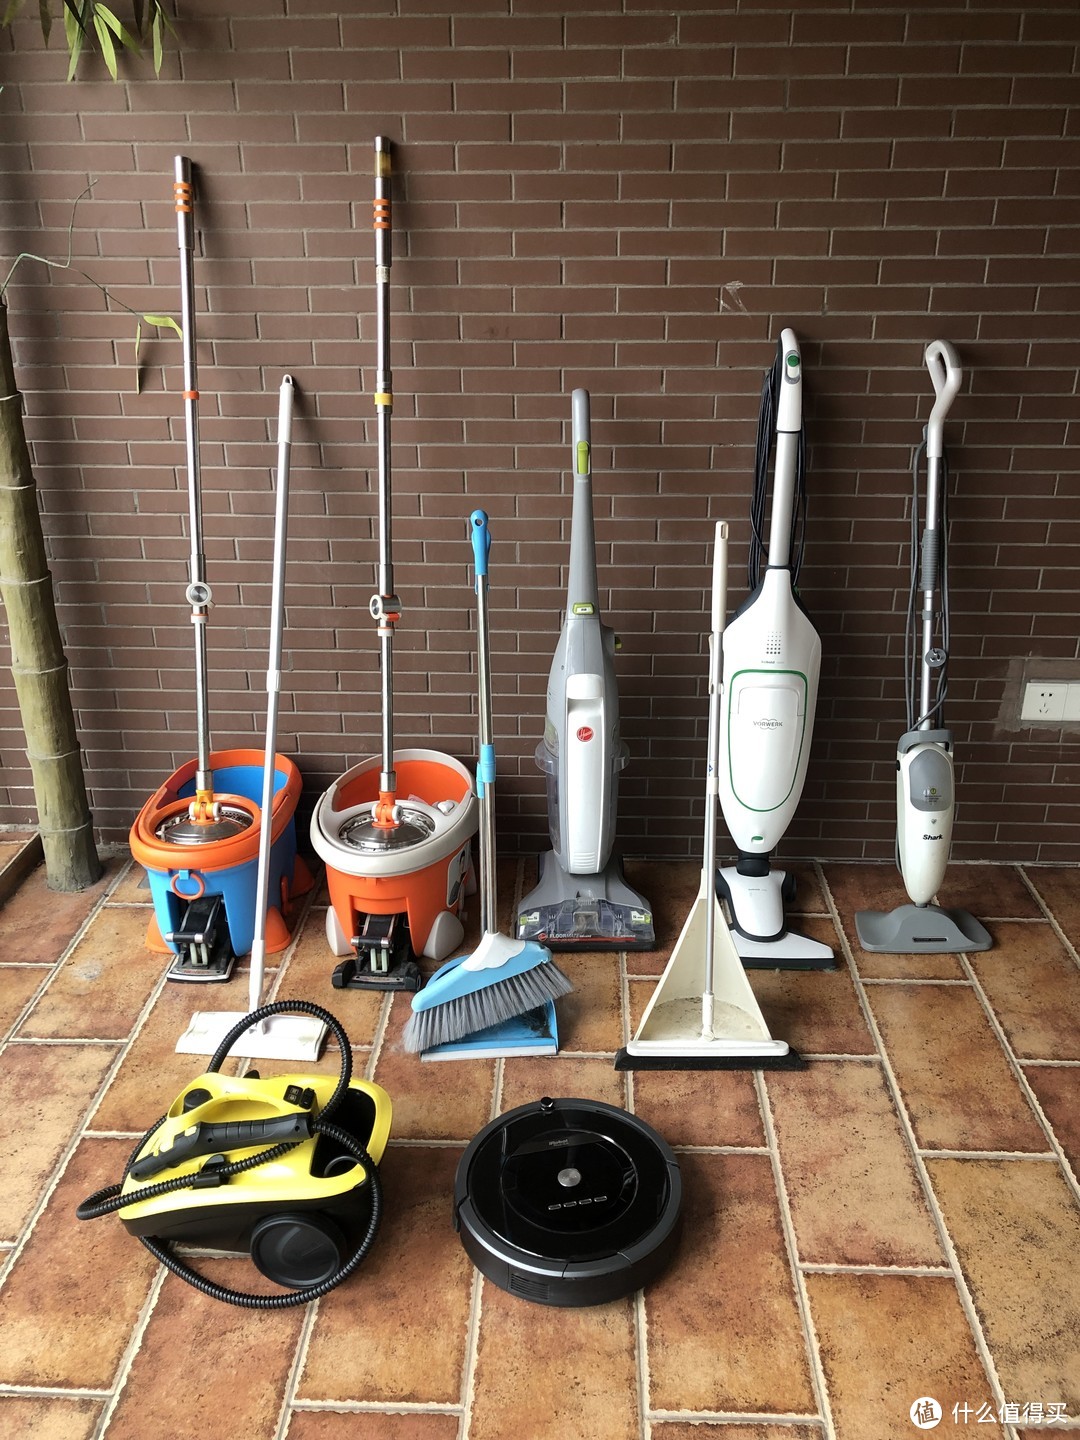 7类清洁工具PK---养宠家庭家居清洁工具怎么选